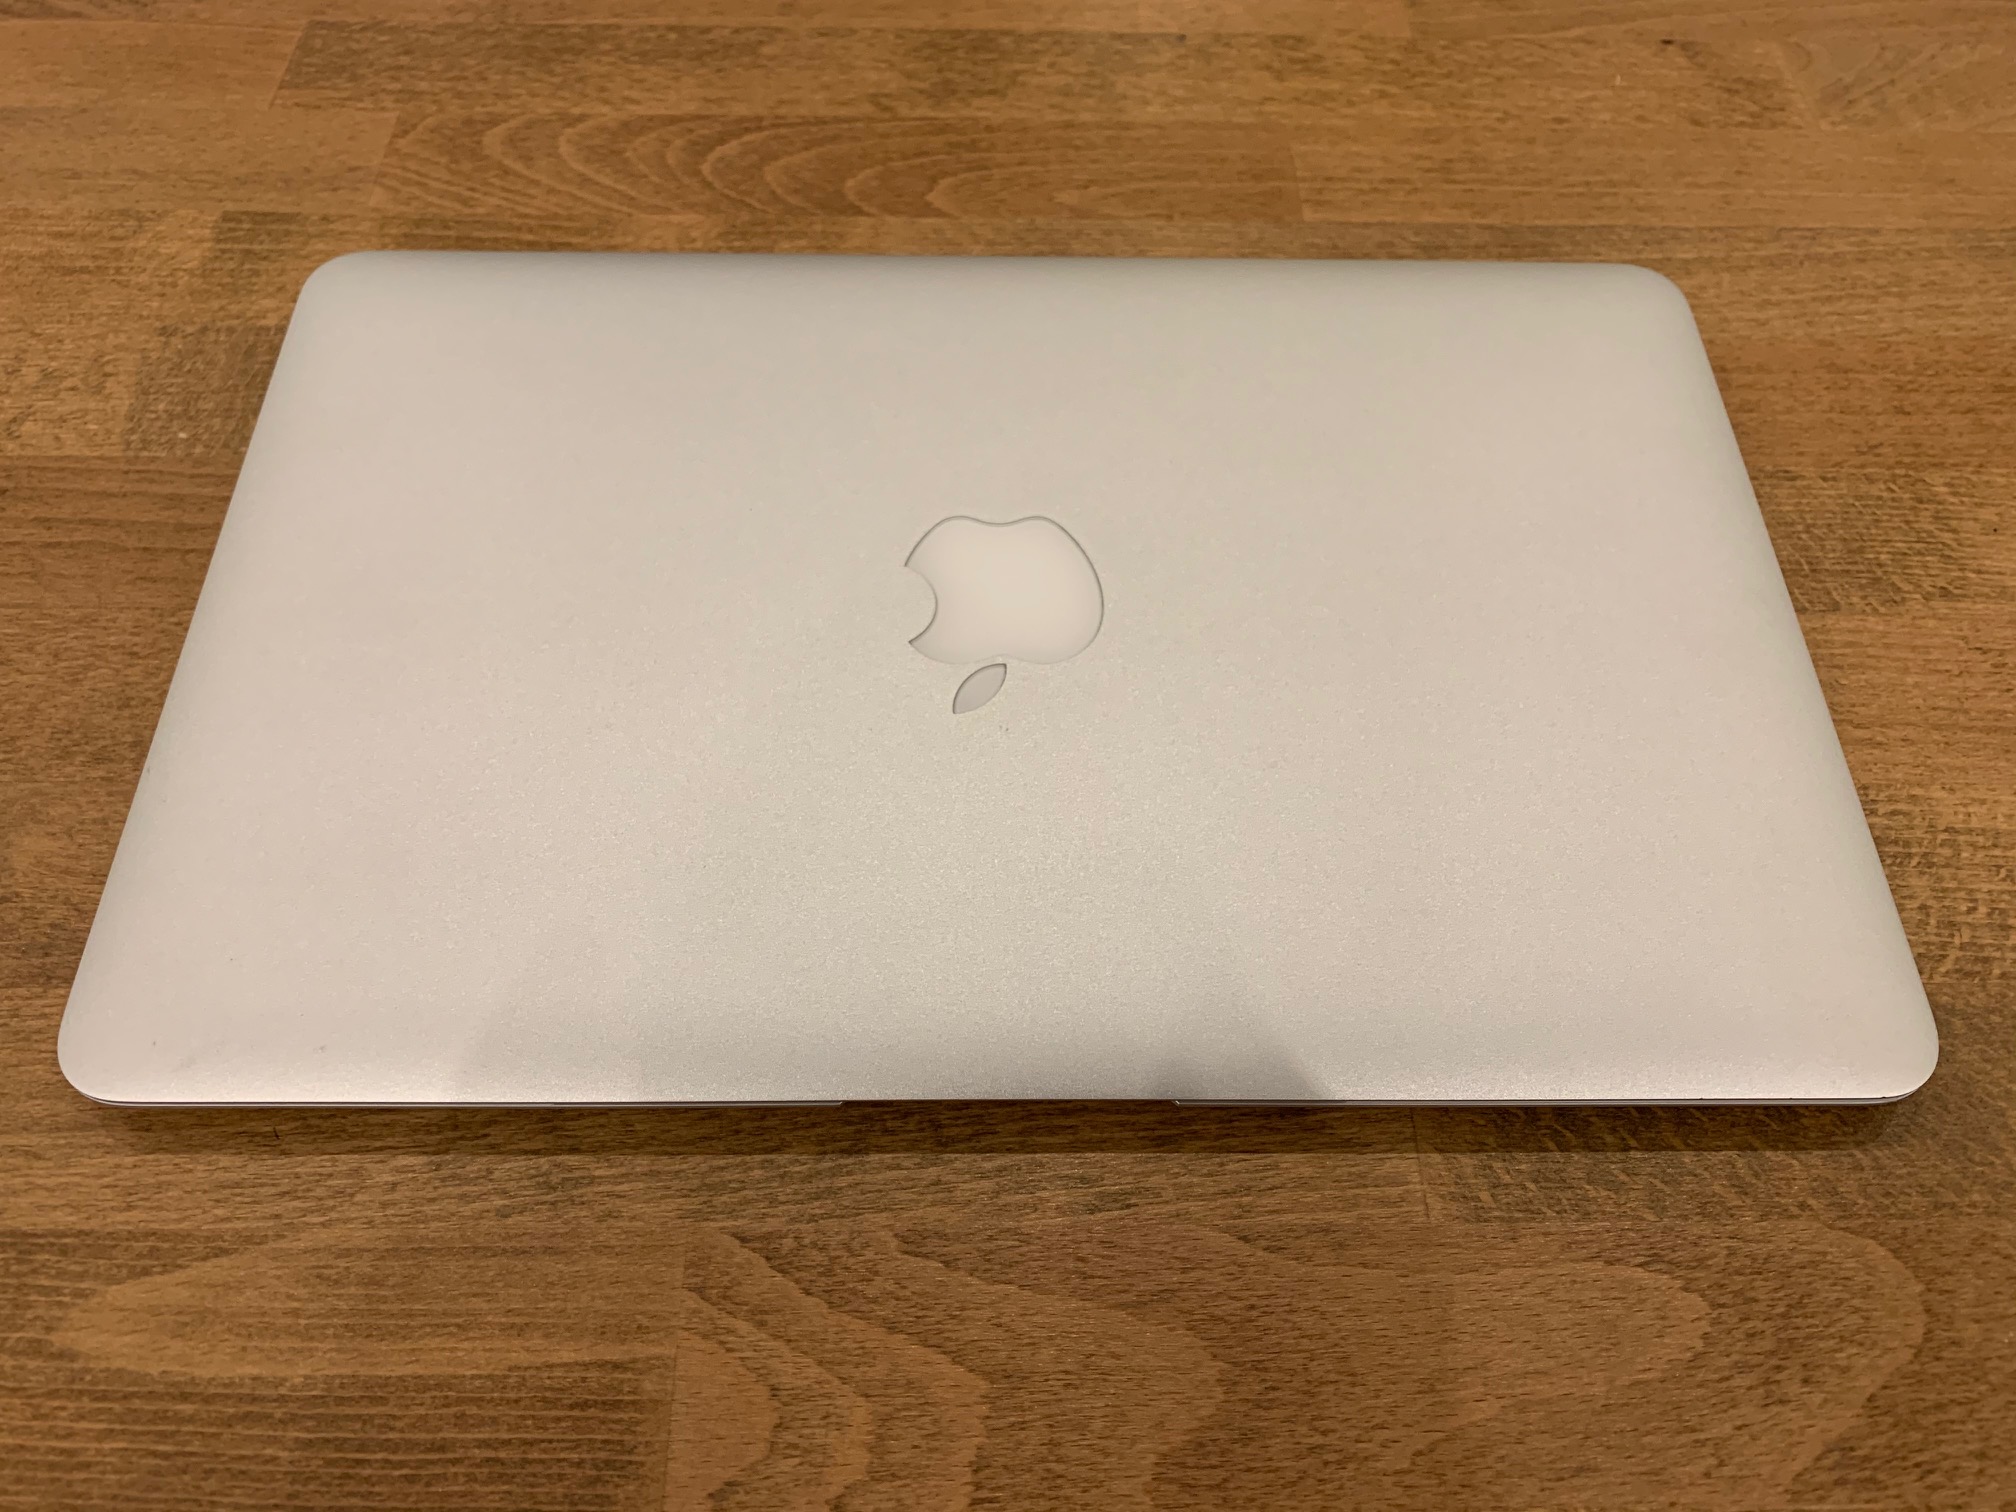 macbook 11 inch 2015 specs